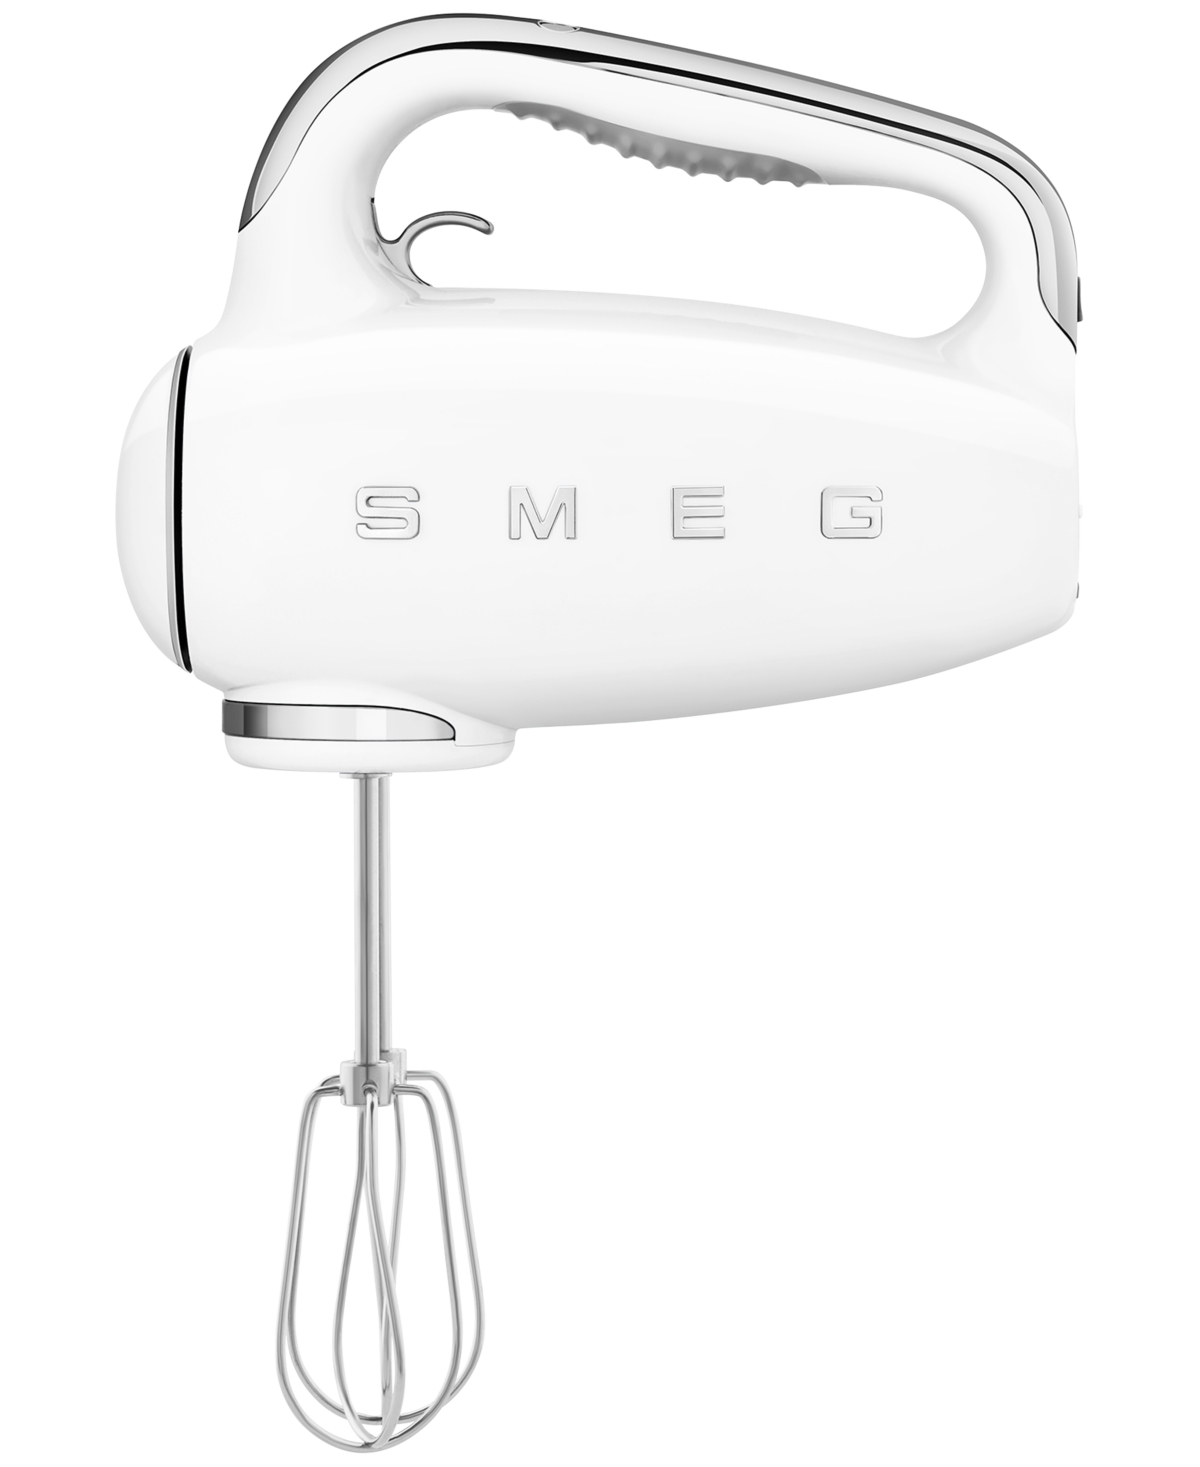 Smeg 50's Retro Style Hand Mixer In White